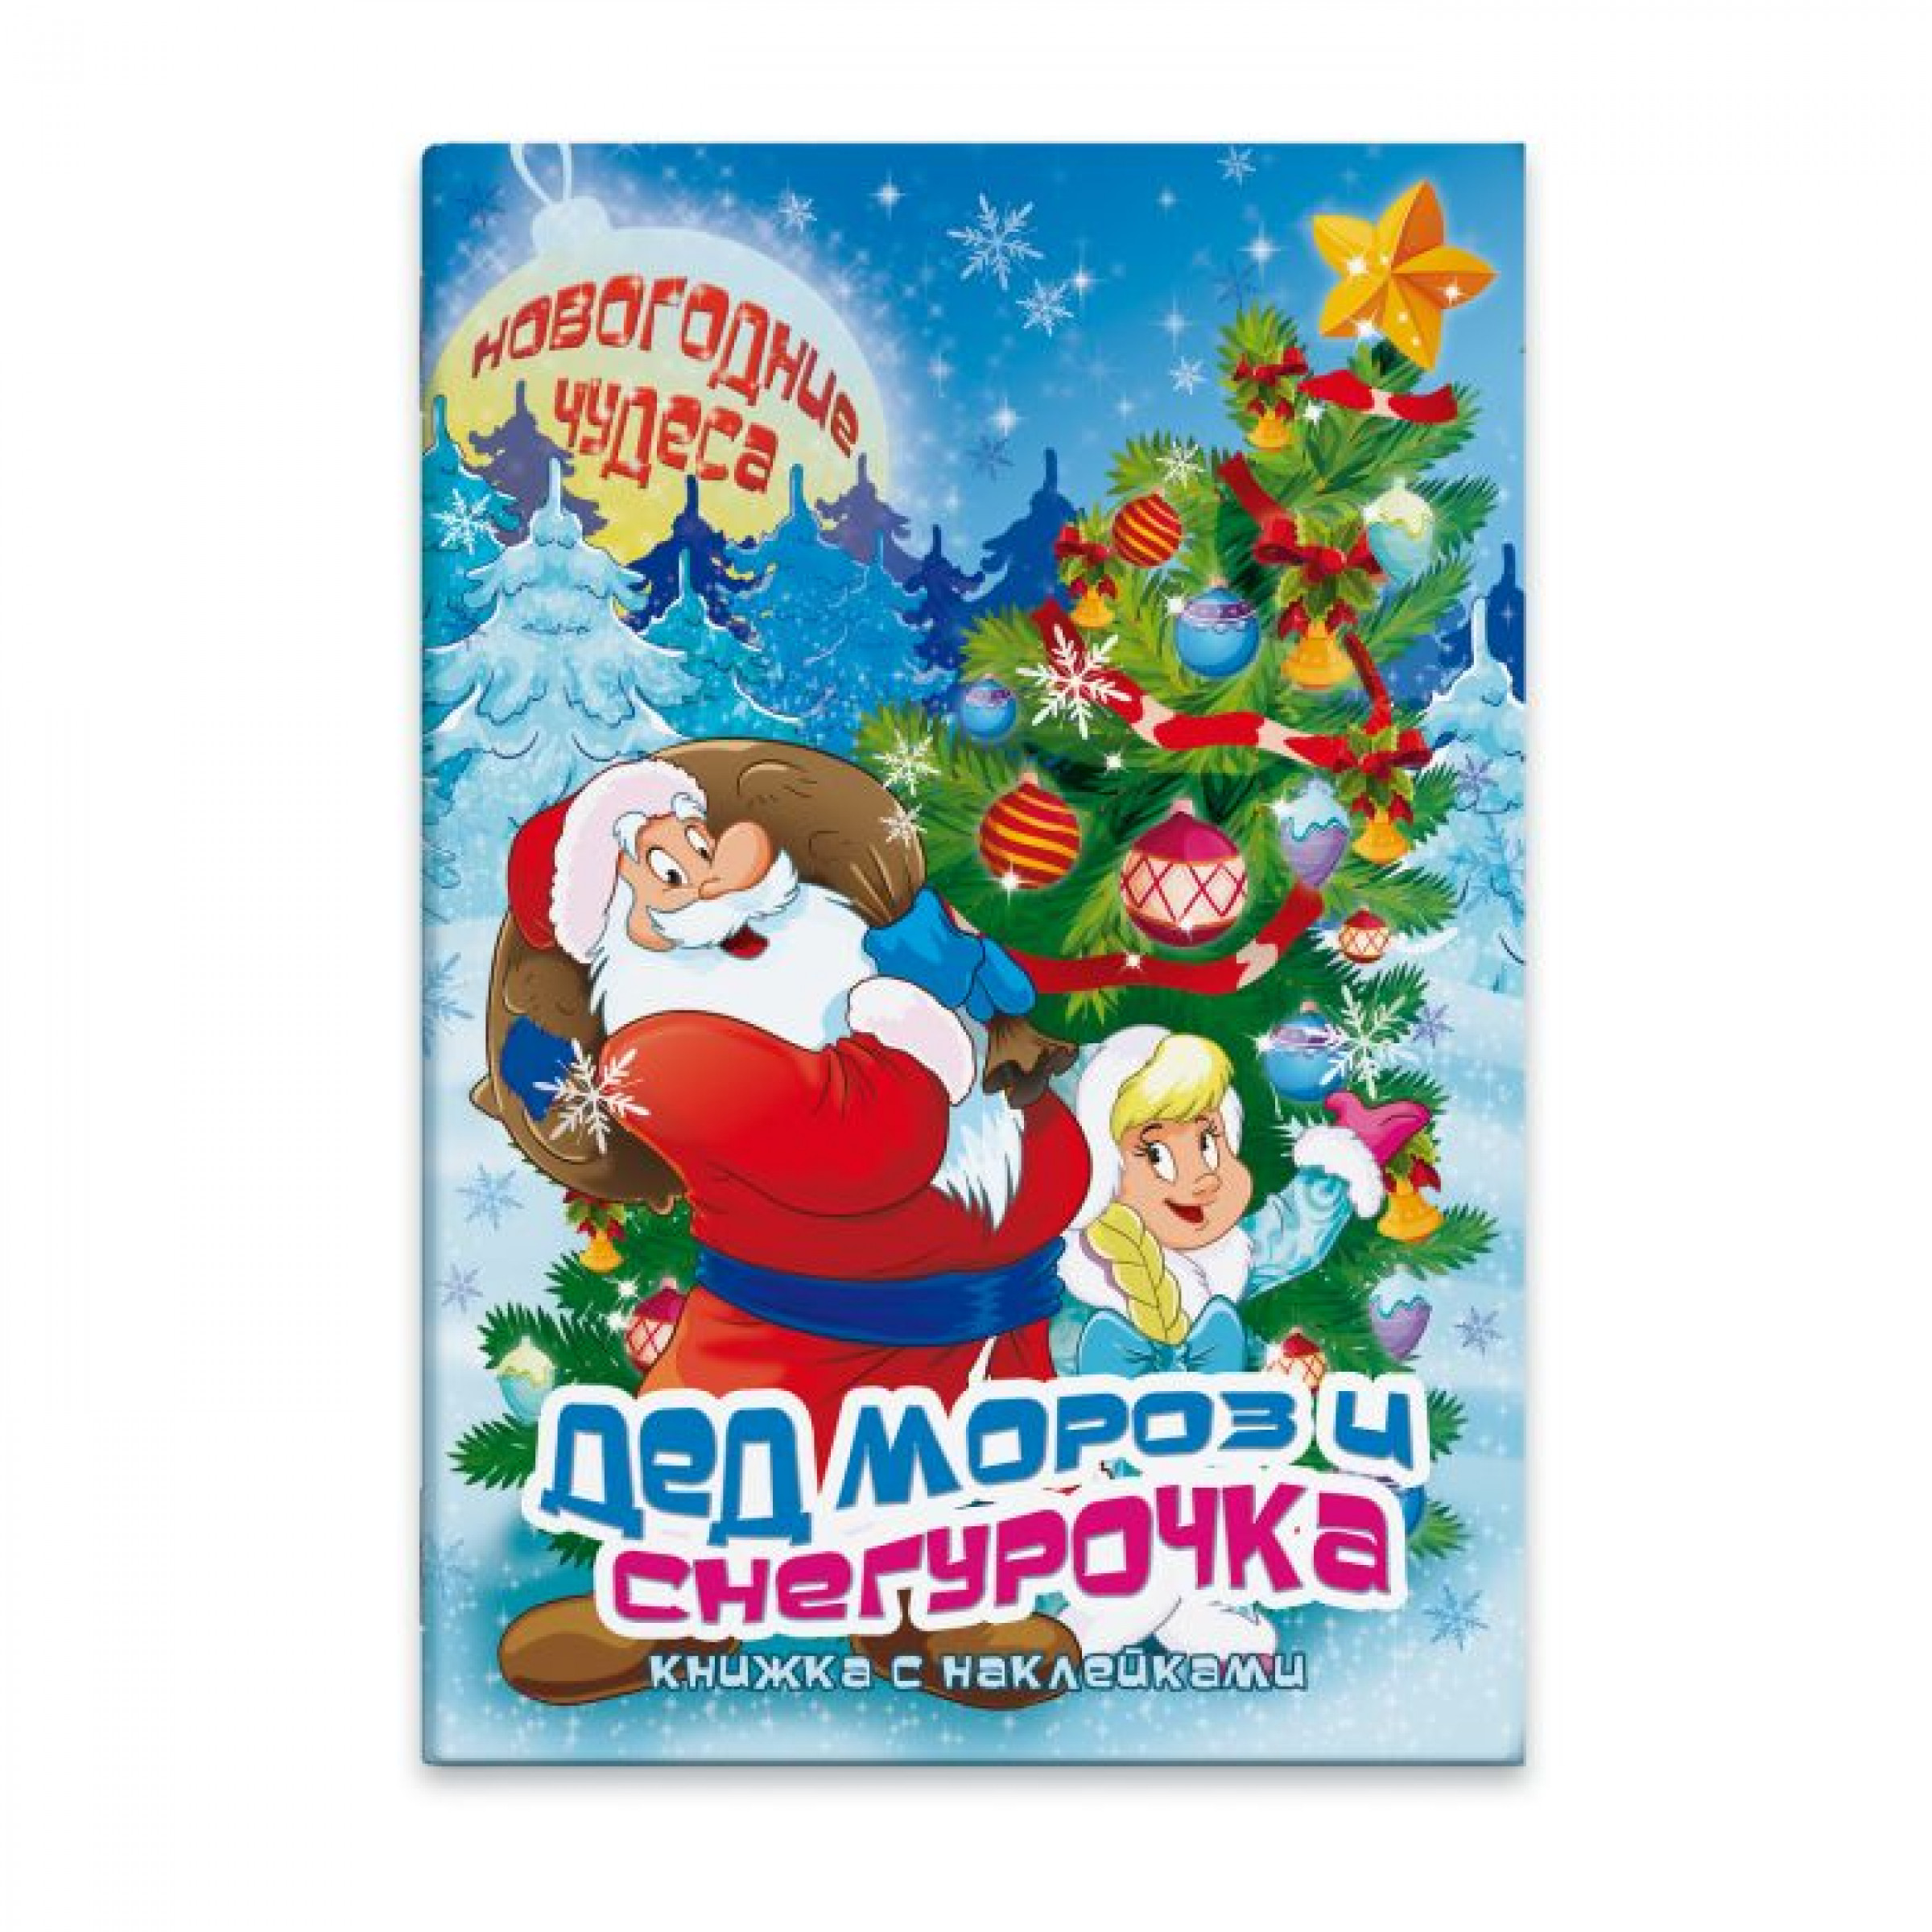 Книжка с наклейками Новогодние чудеса, Дед Мороз и Снегурочка, 235х340 мм